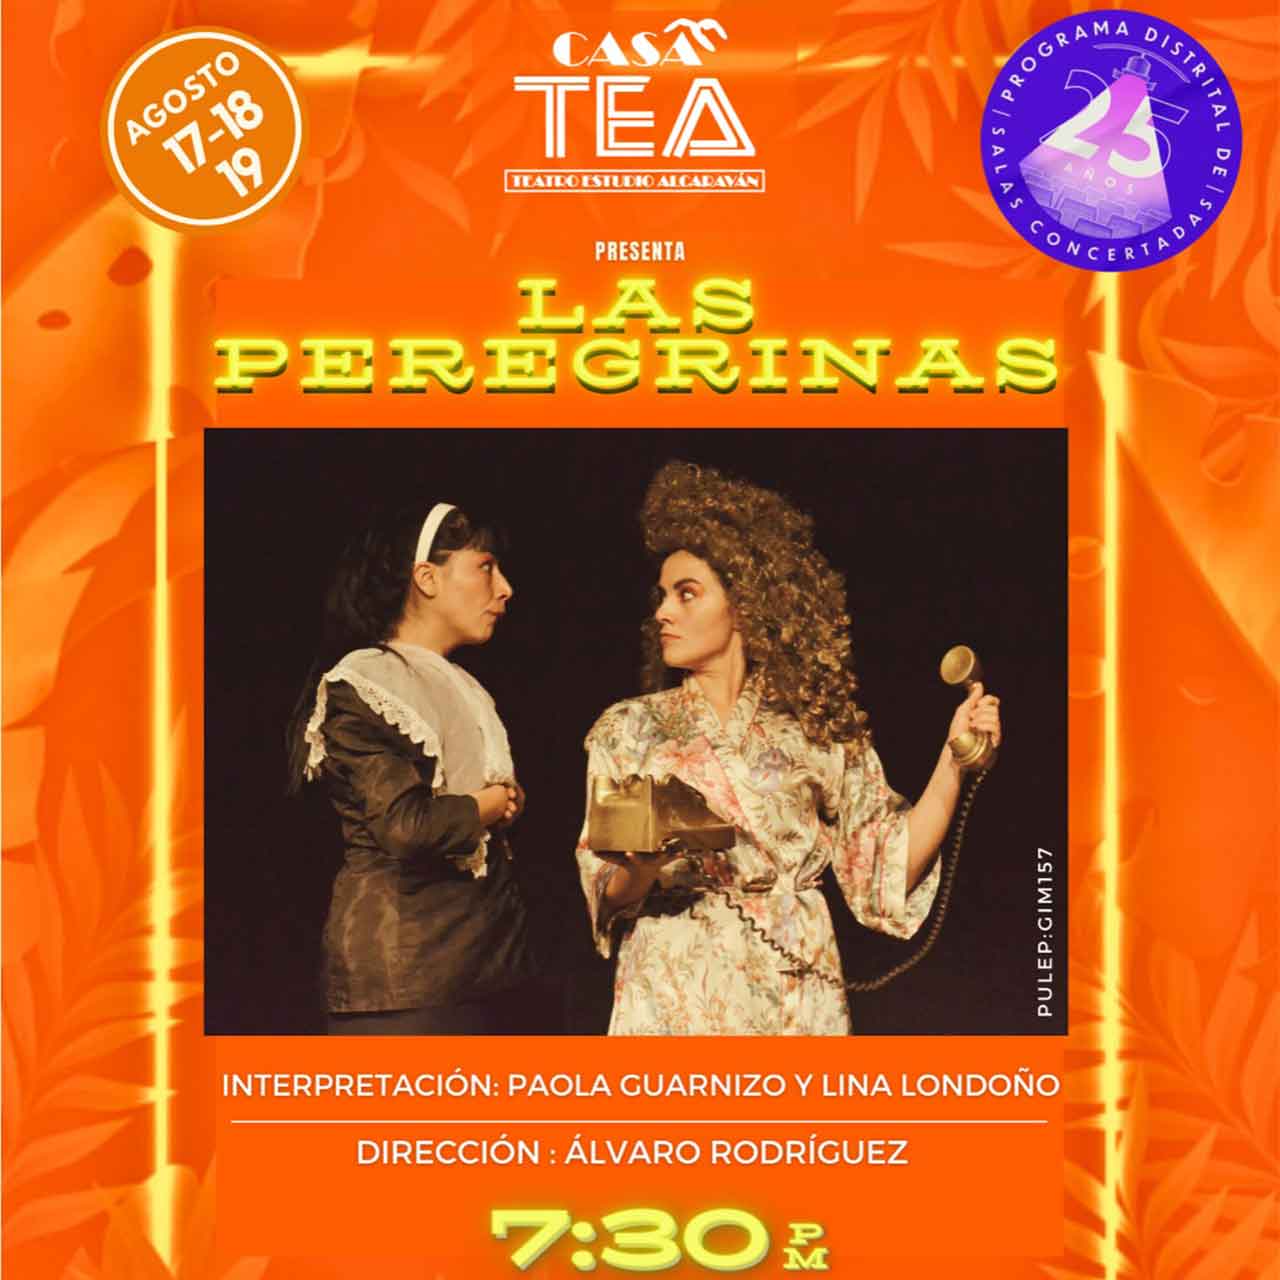 Las Peregrinas, obra de teatro, se presenta gratis en Casa TEA este 17, 18 y 19 de agosto